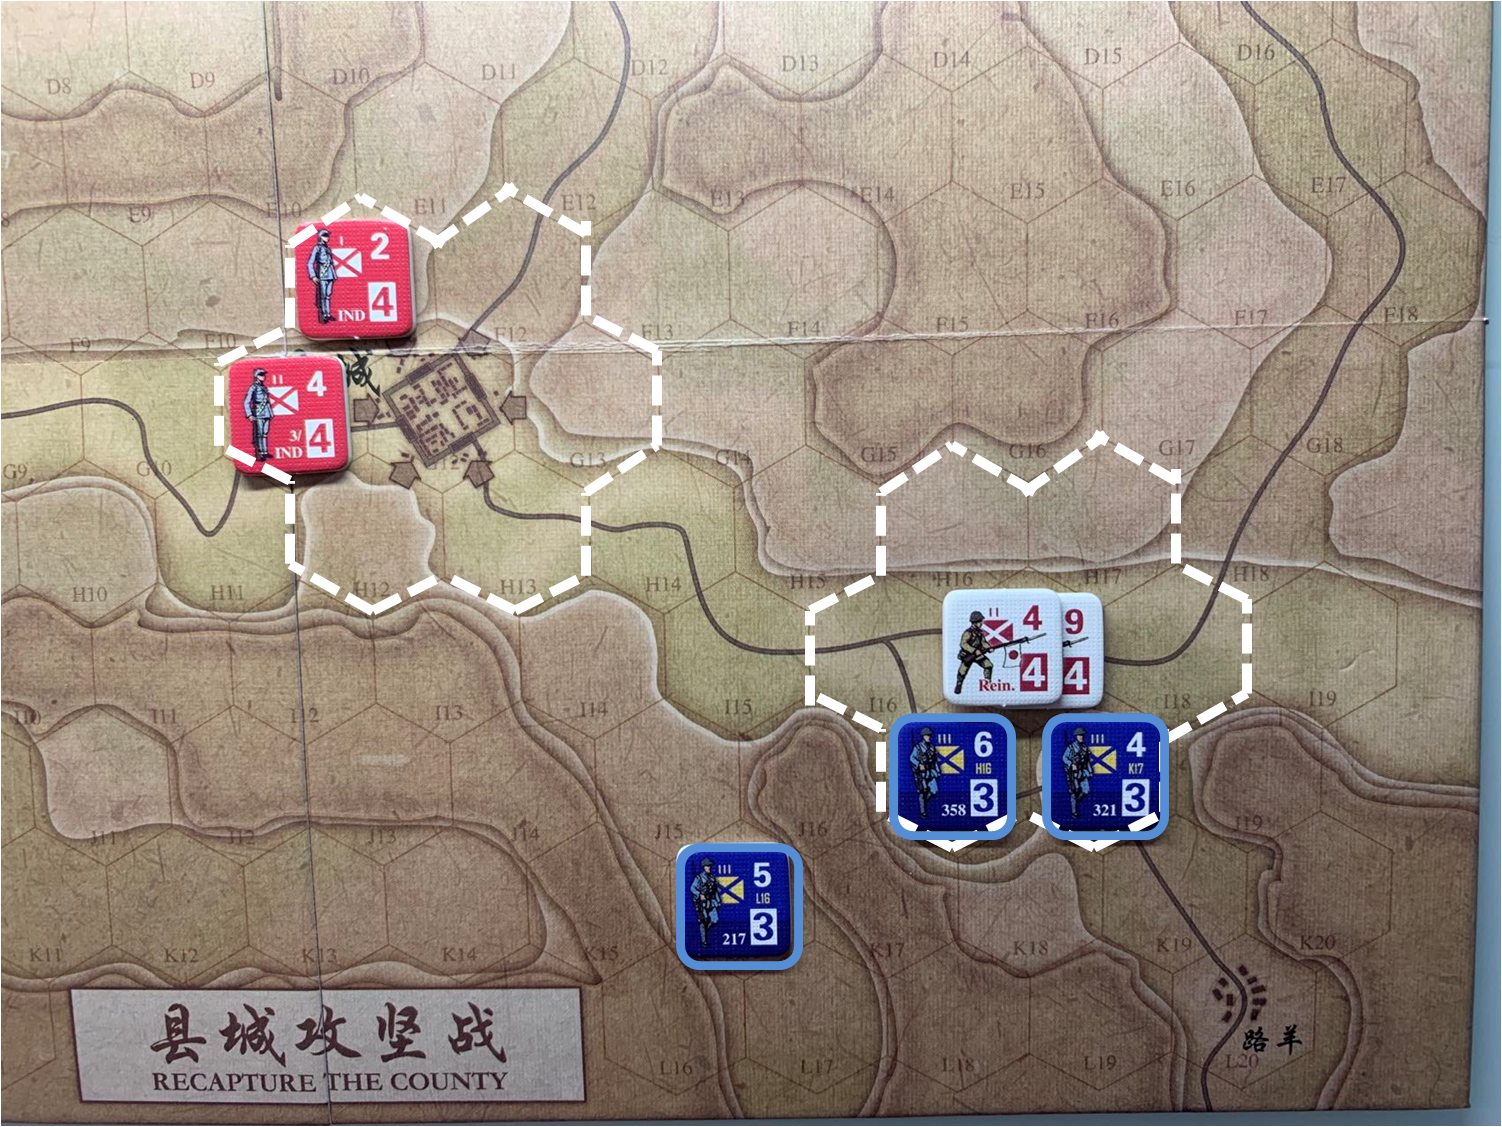 第三回合国军正规军部队对于移动命令4的执行结果，及县城周边和路羊方向日军增援部队（I17）日方控制区覆盖范围